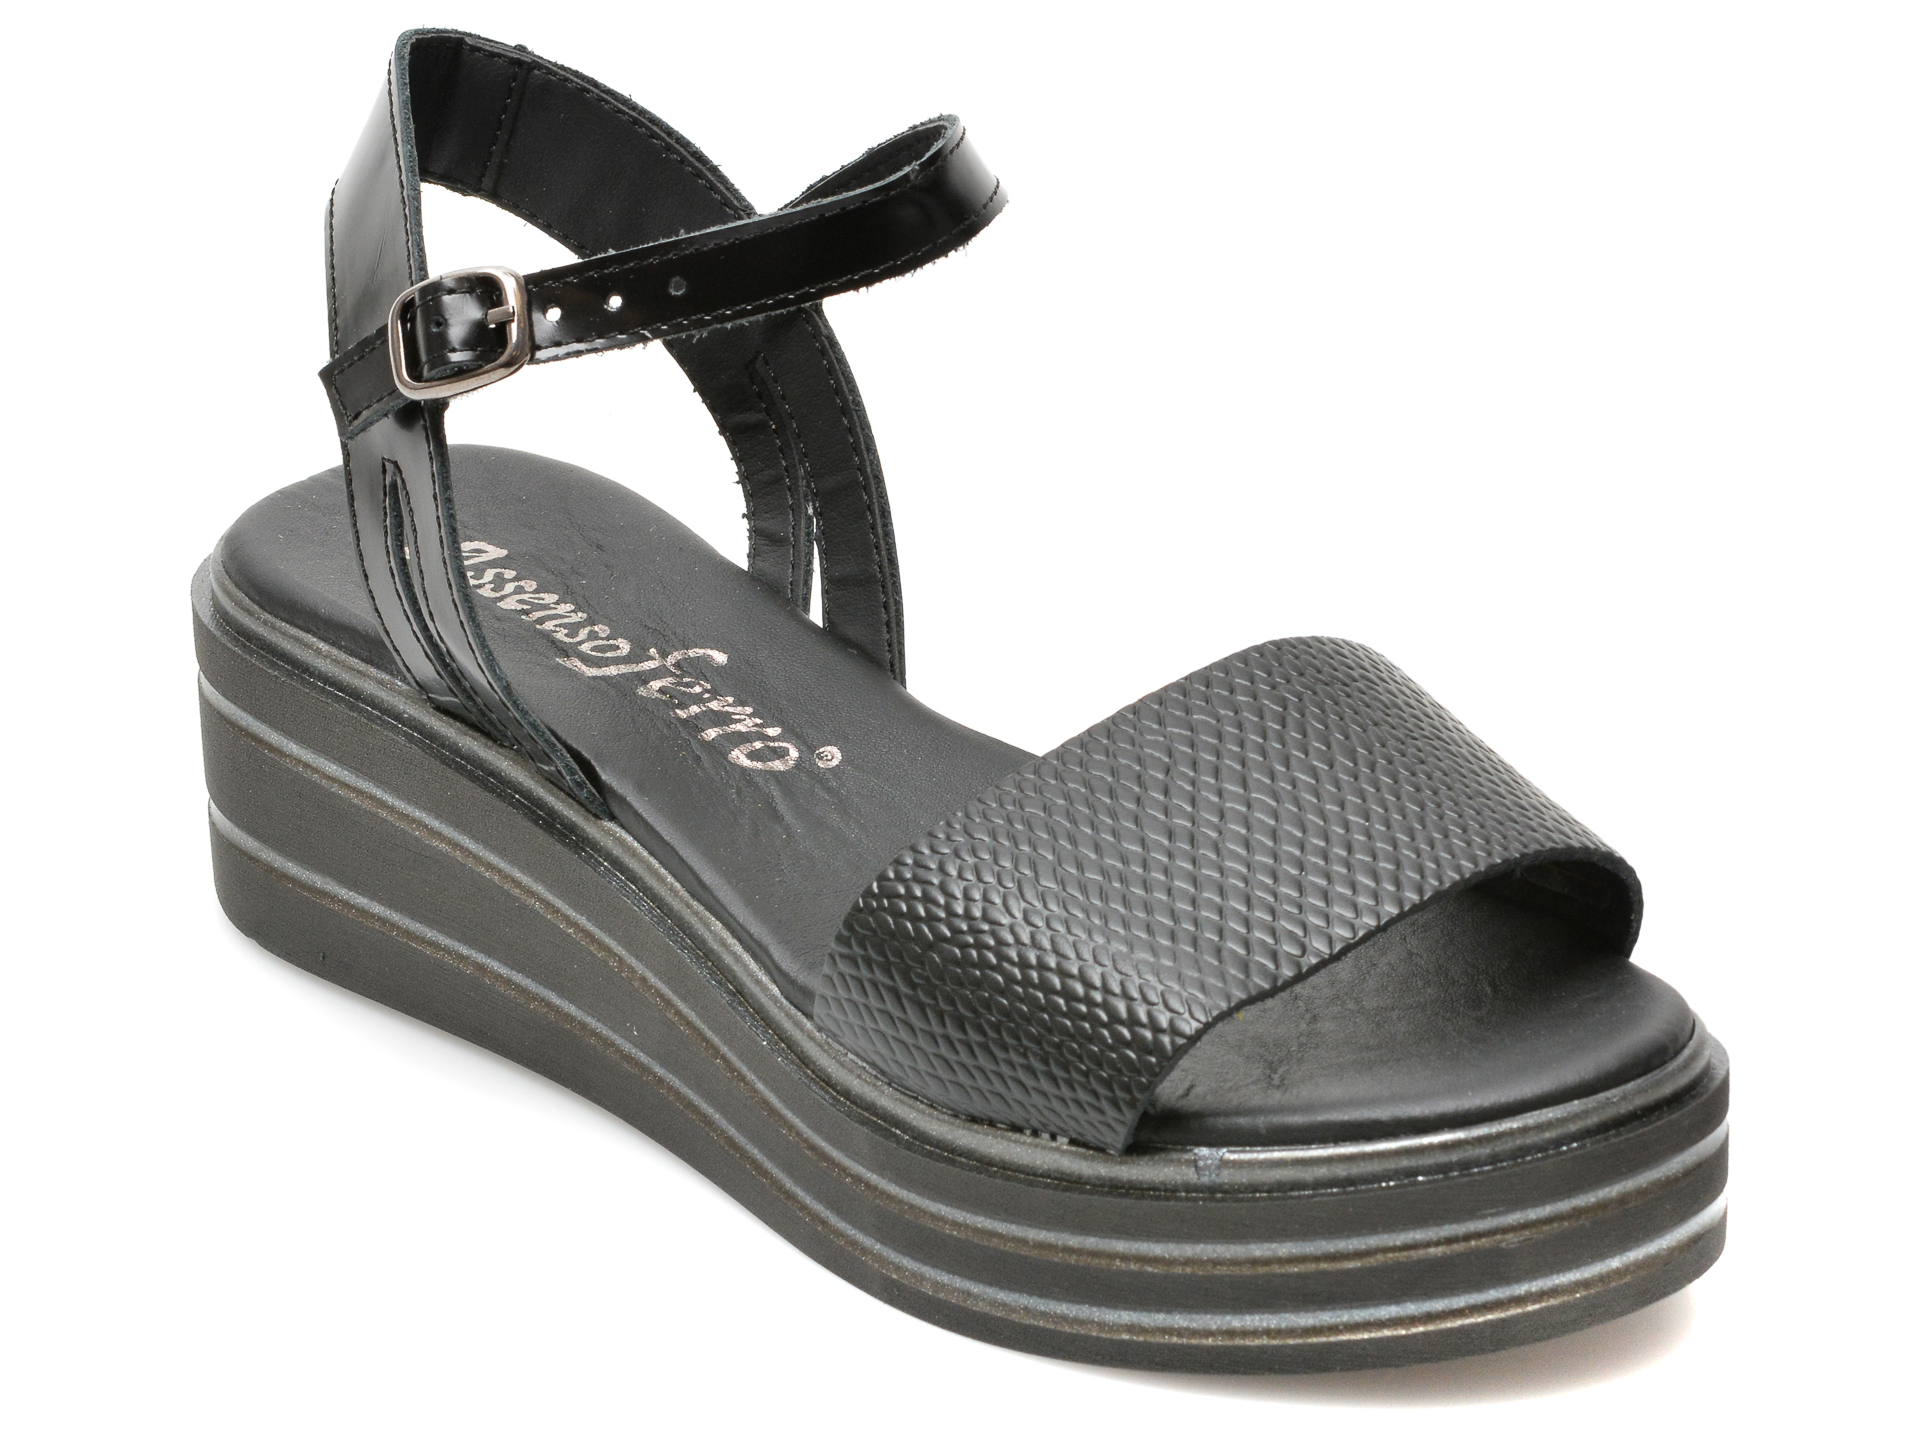 Sandale ASSENSO FERRO negre, 32920, din piele naturala /femei/sandale